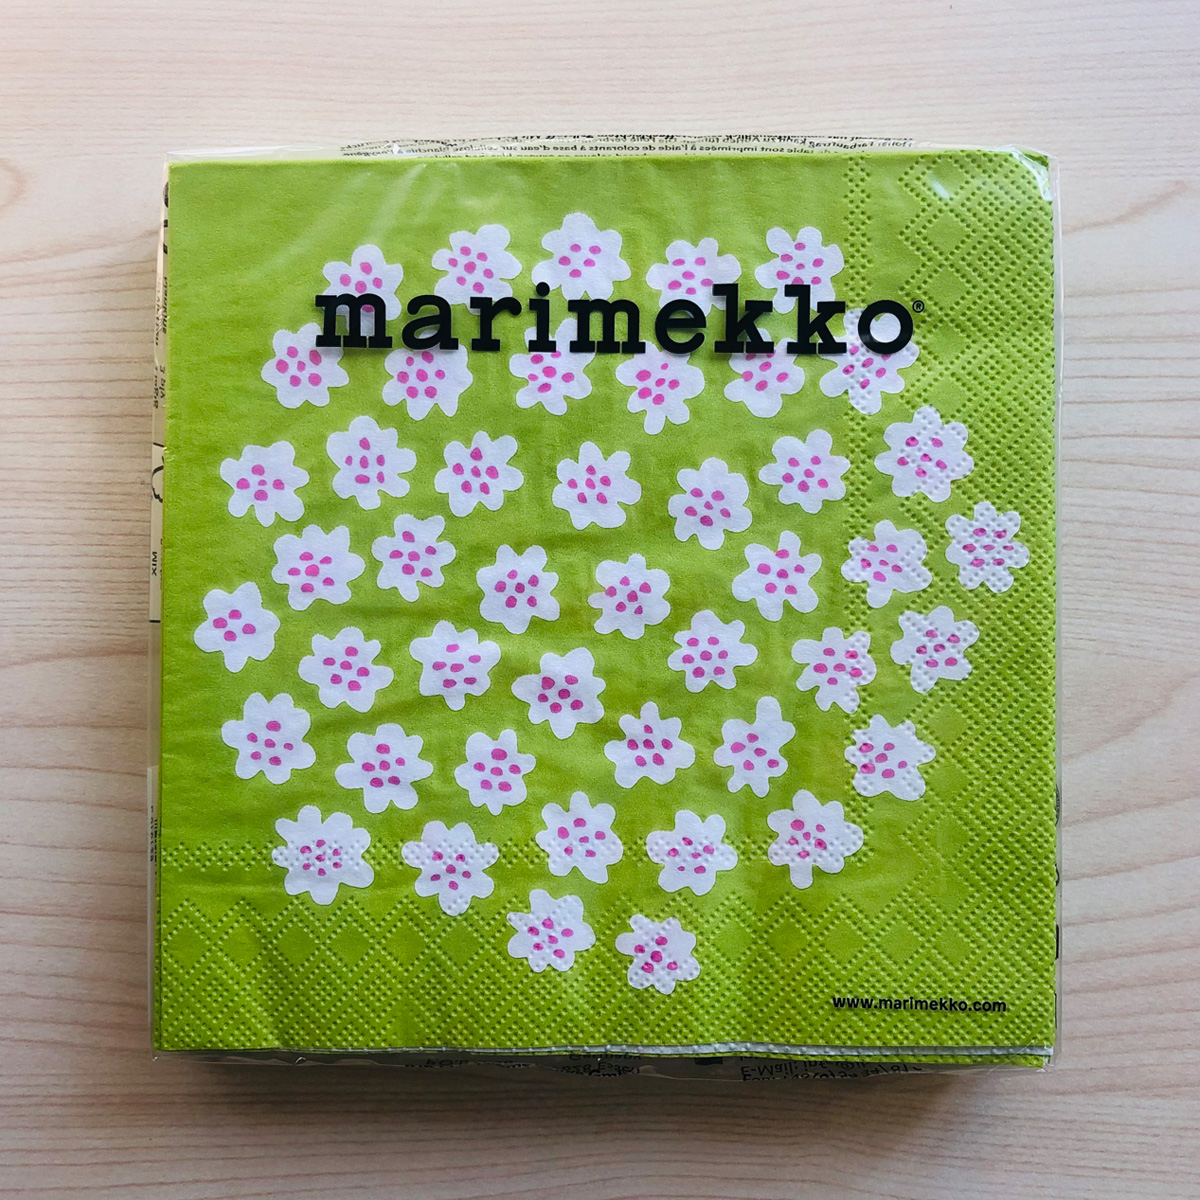 マリメッコ marimekko ペーパーナプキン 紙ナプキン ランチサイズ 20枚 575729 PUKETTI プケッティ light green 花柄 ライトグリーン